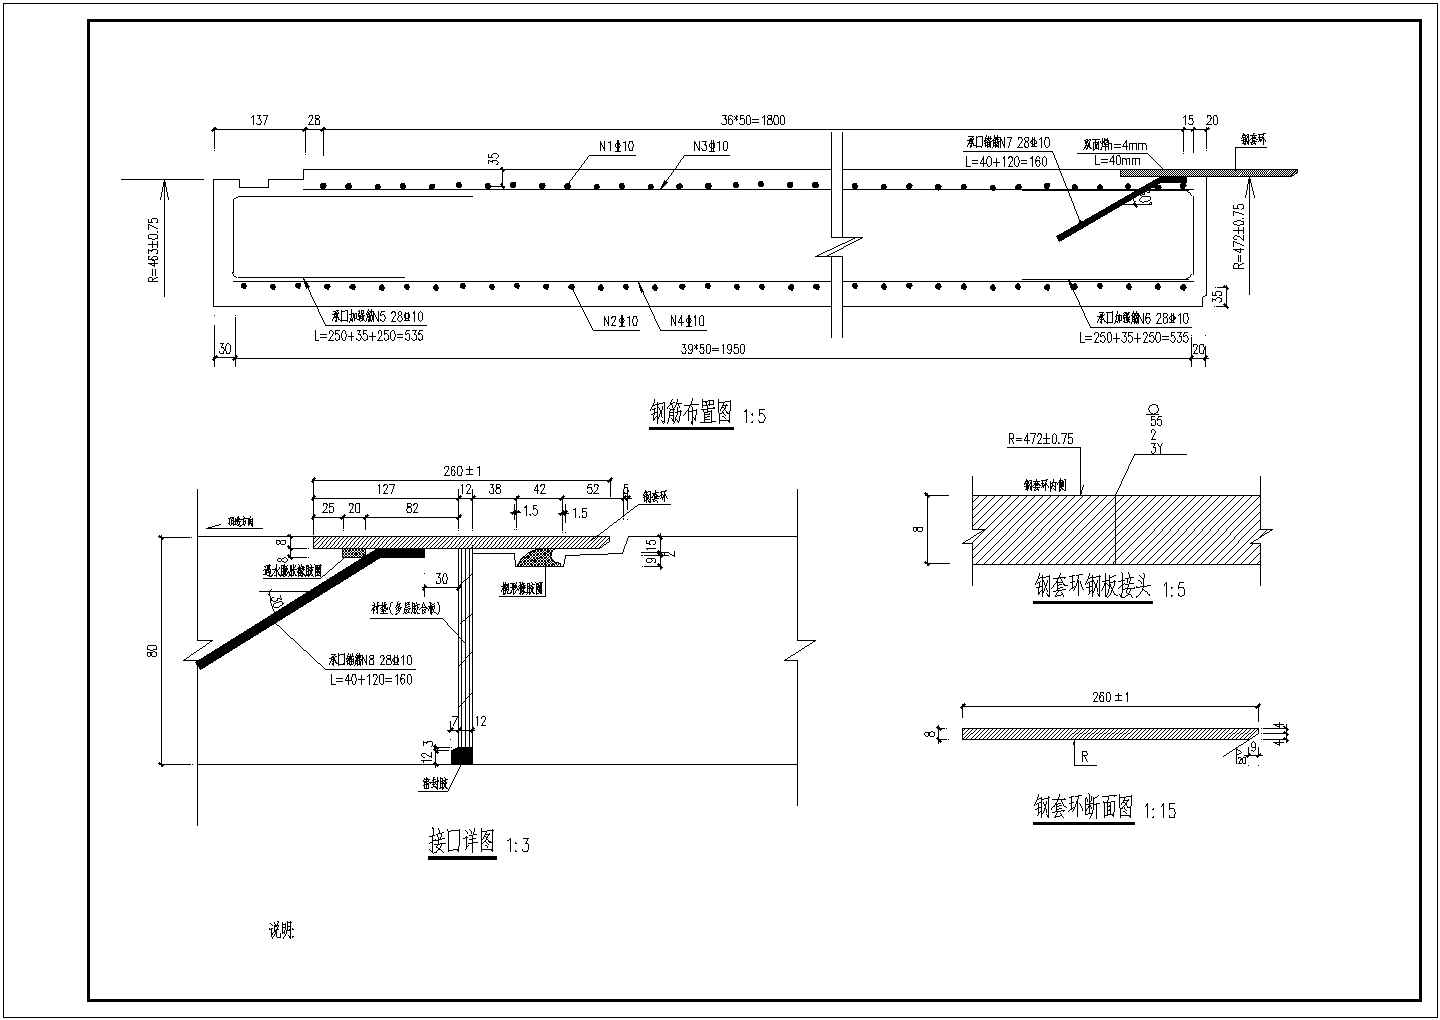 铁路设计院设计的穿越铁路路基顶管管节详图